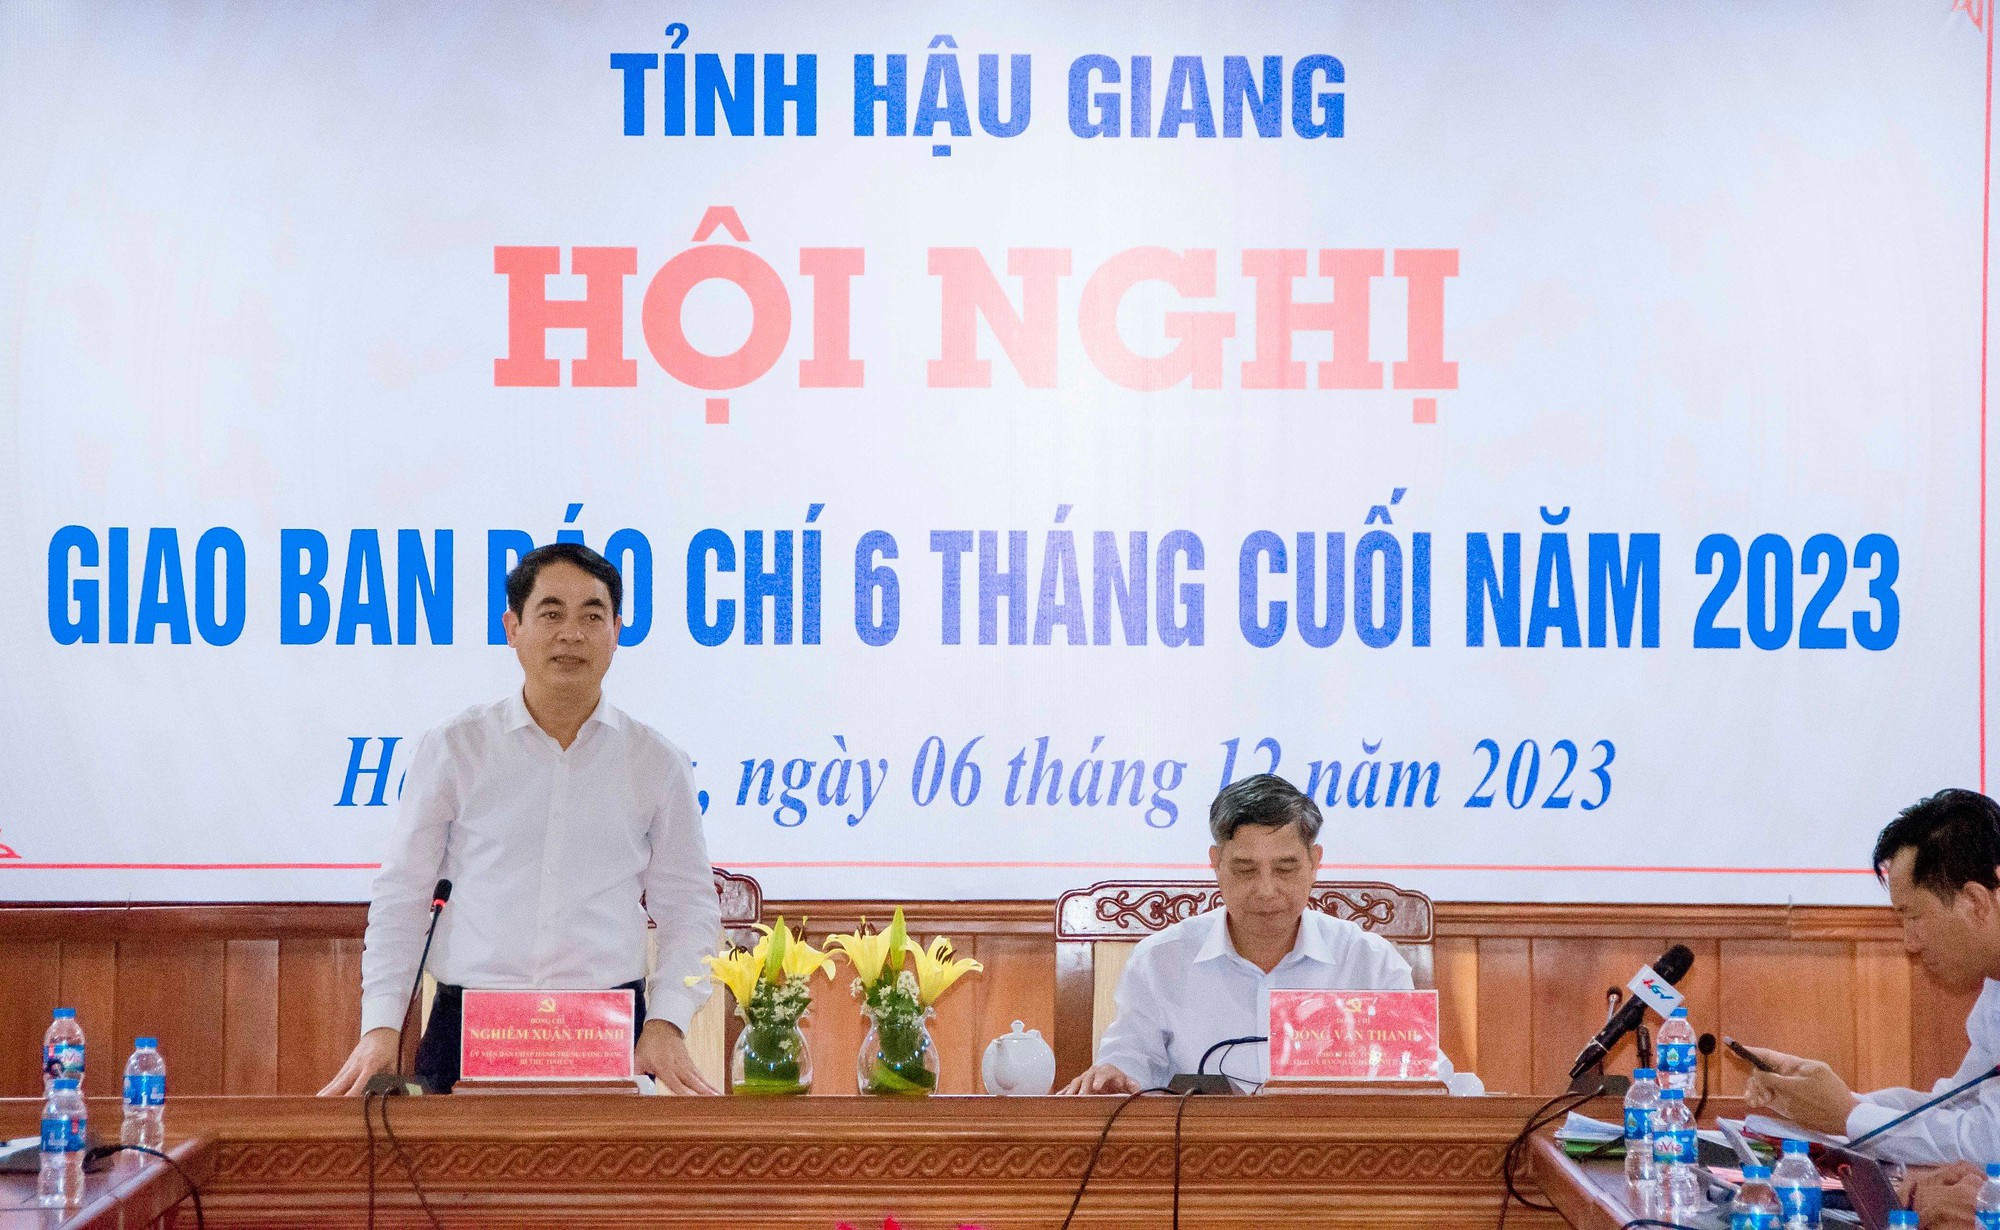 Festival Quốc tế ngành lúa gạo lần đầu tiên tại Việt Nam sắp diễn ra tại Hậu Giang - Ảnh 1.